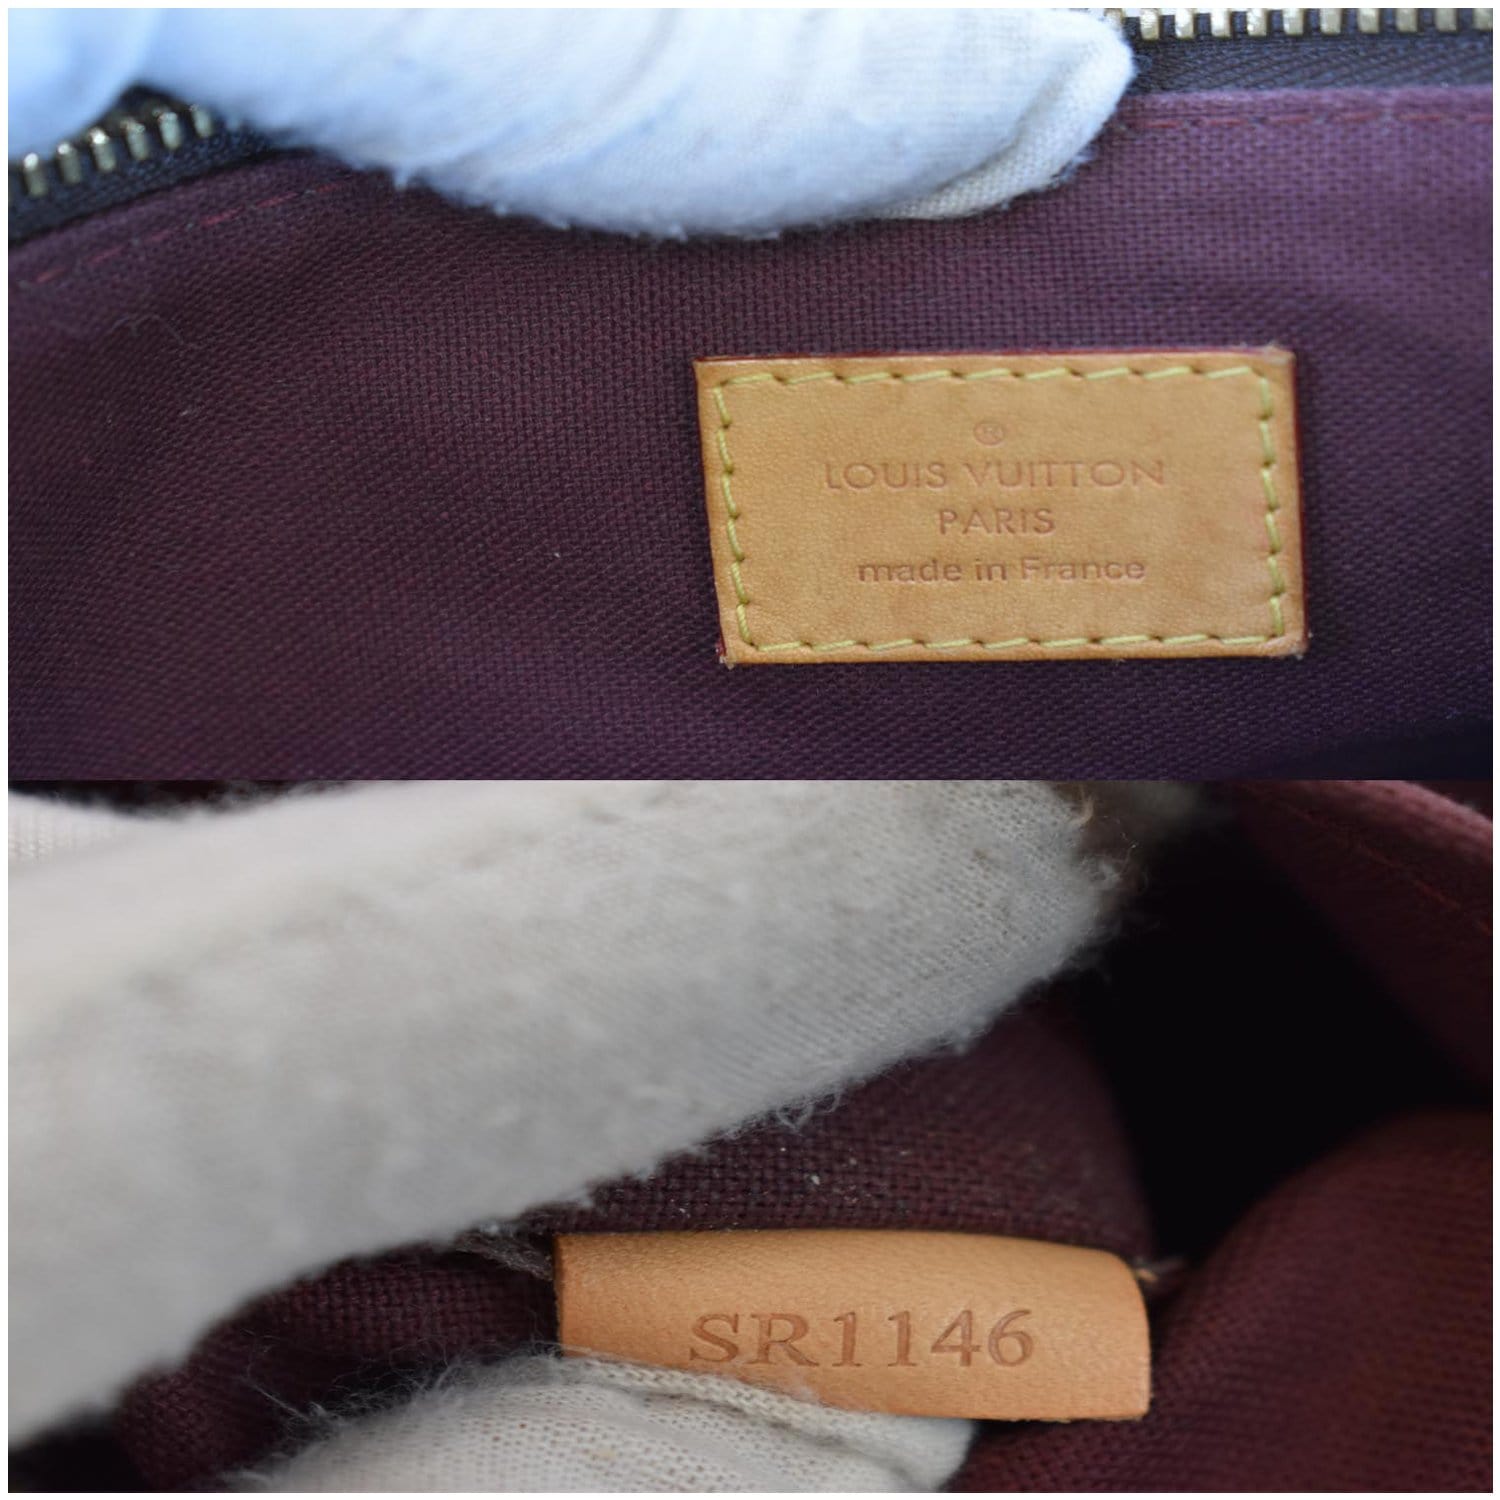 Turenne fabric handbag Louis Vuitton Brown in Cloth - 35293922